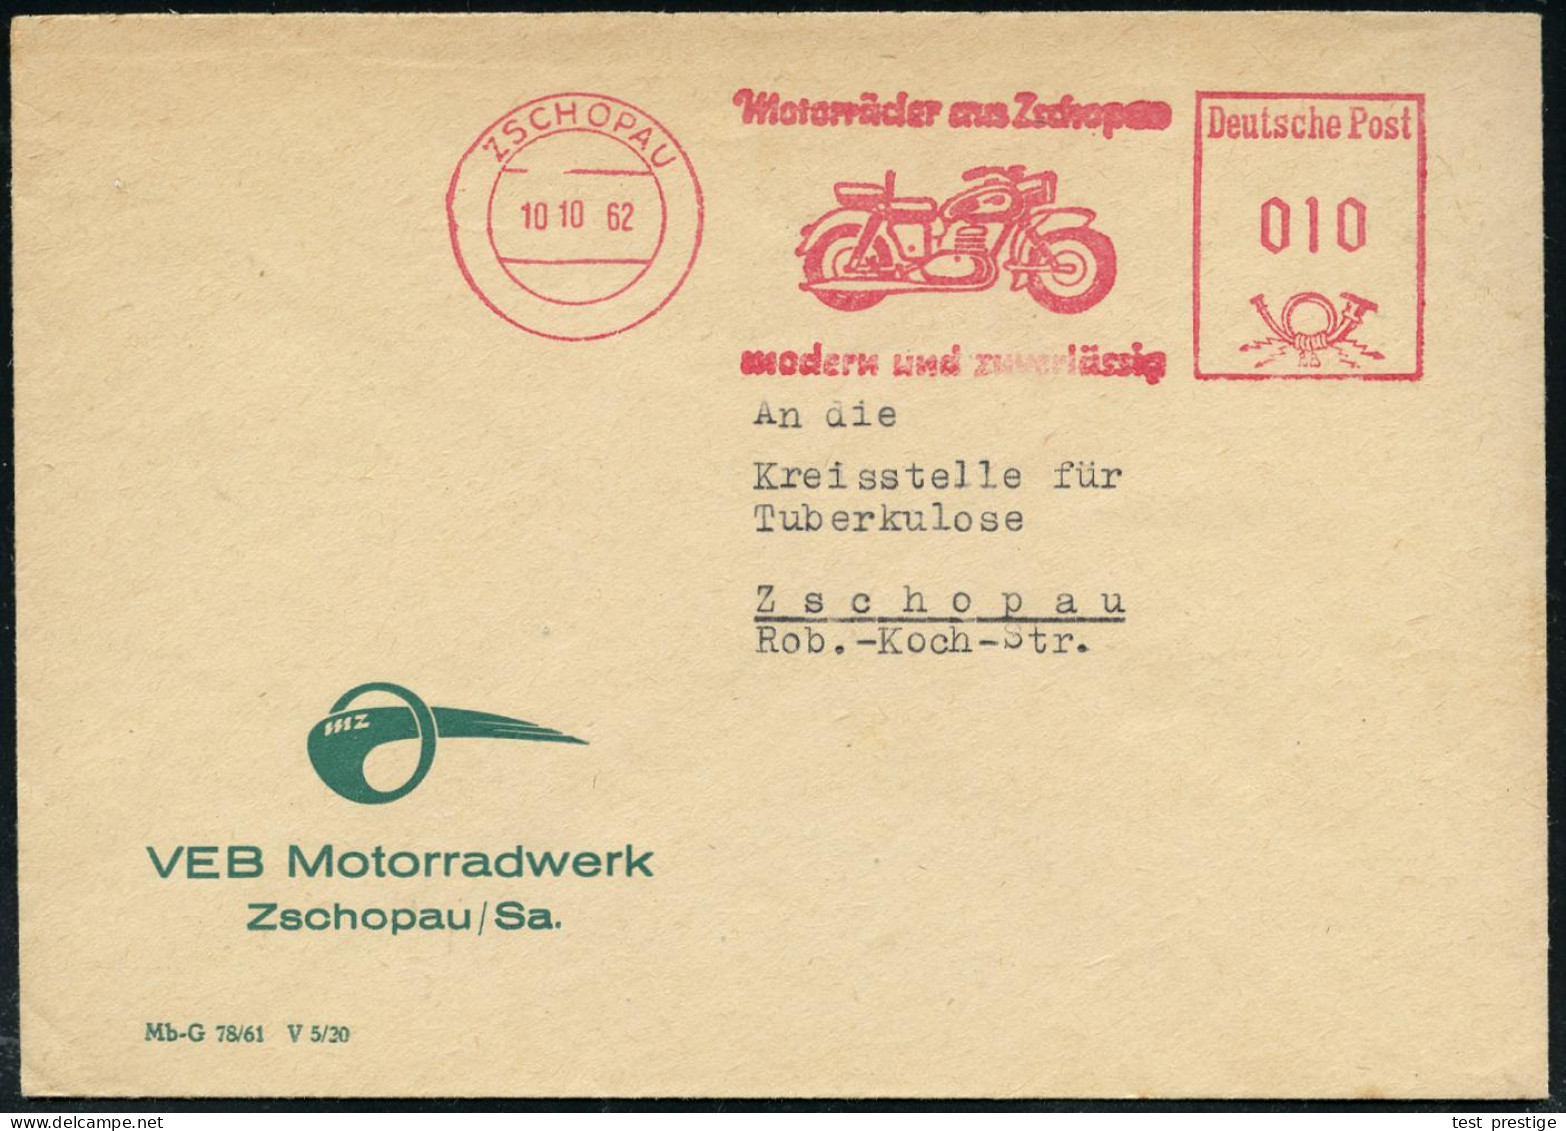 ZSCHOPAU/ Motorräder Aus Zschopau/ Modern U.zuverlässig 1962 (10.10.) AFS = Mototrrad "M Z" , Firmenbief Mit MZ-Logo (=  - Motorräder